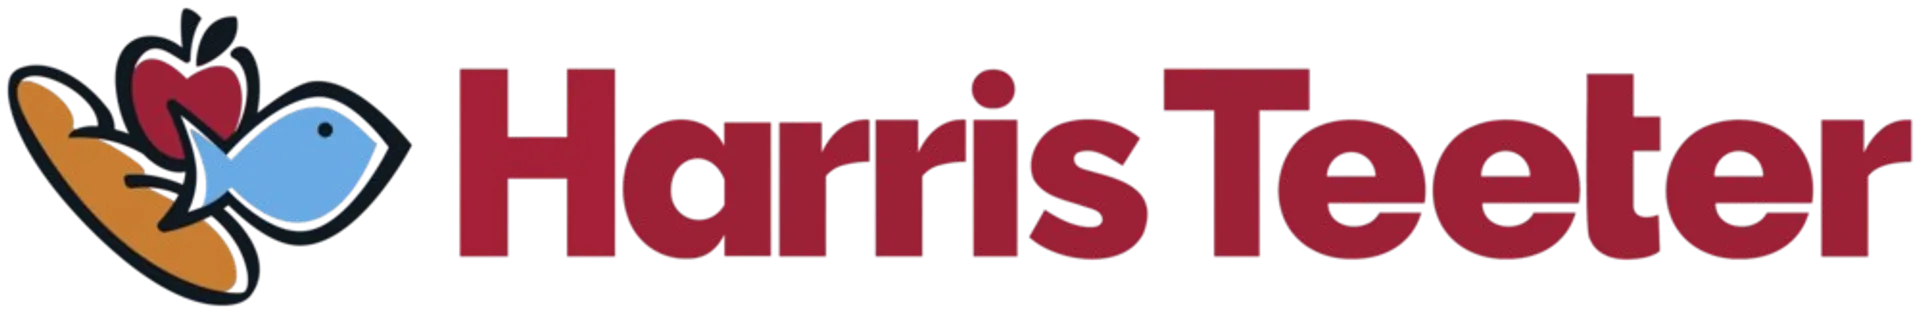 HARRIS TEETER logo. Current weekly ad